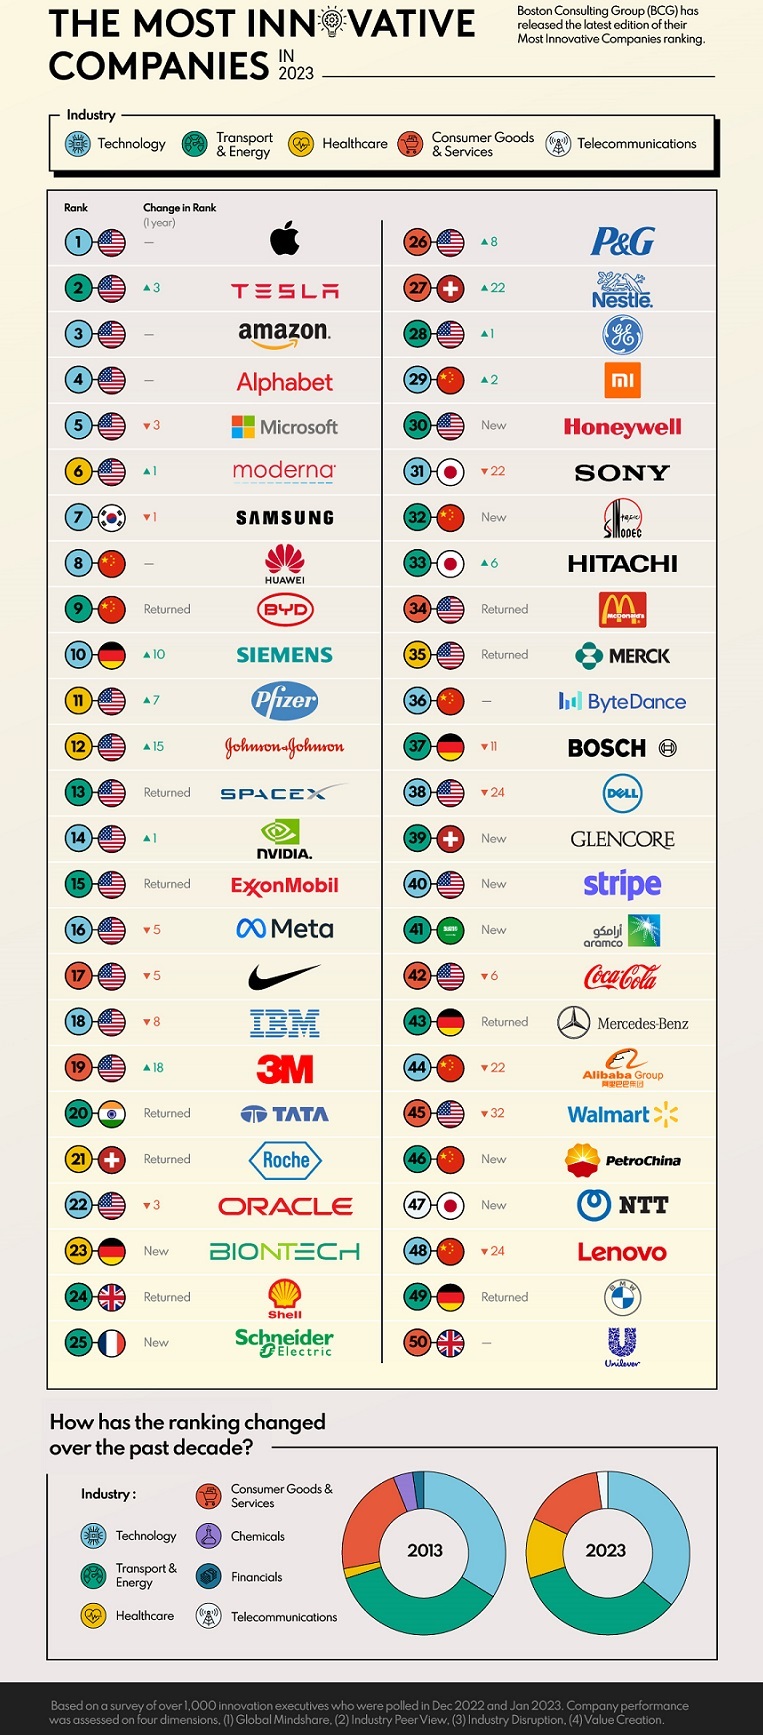 نوآورترین شرکت های جهان در سال 2023